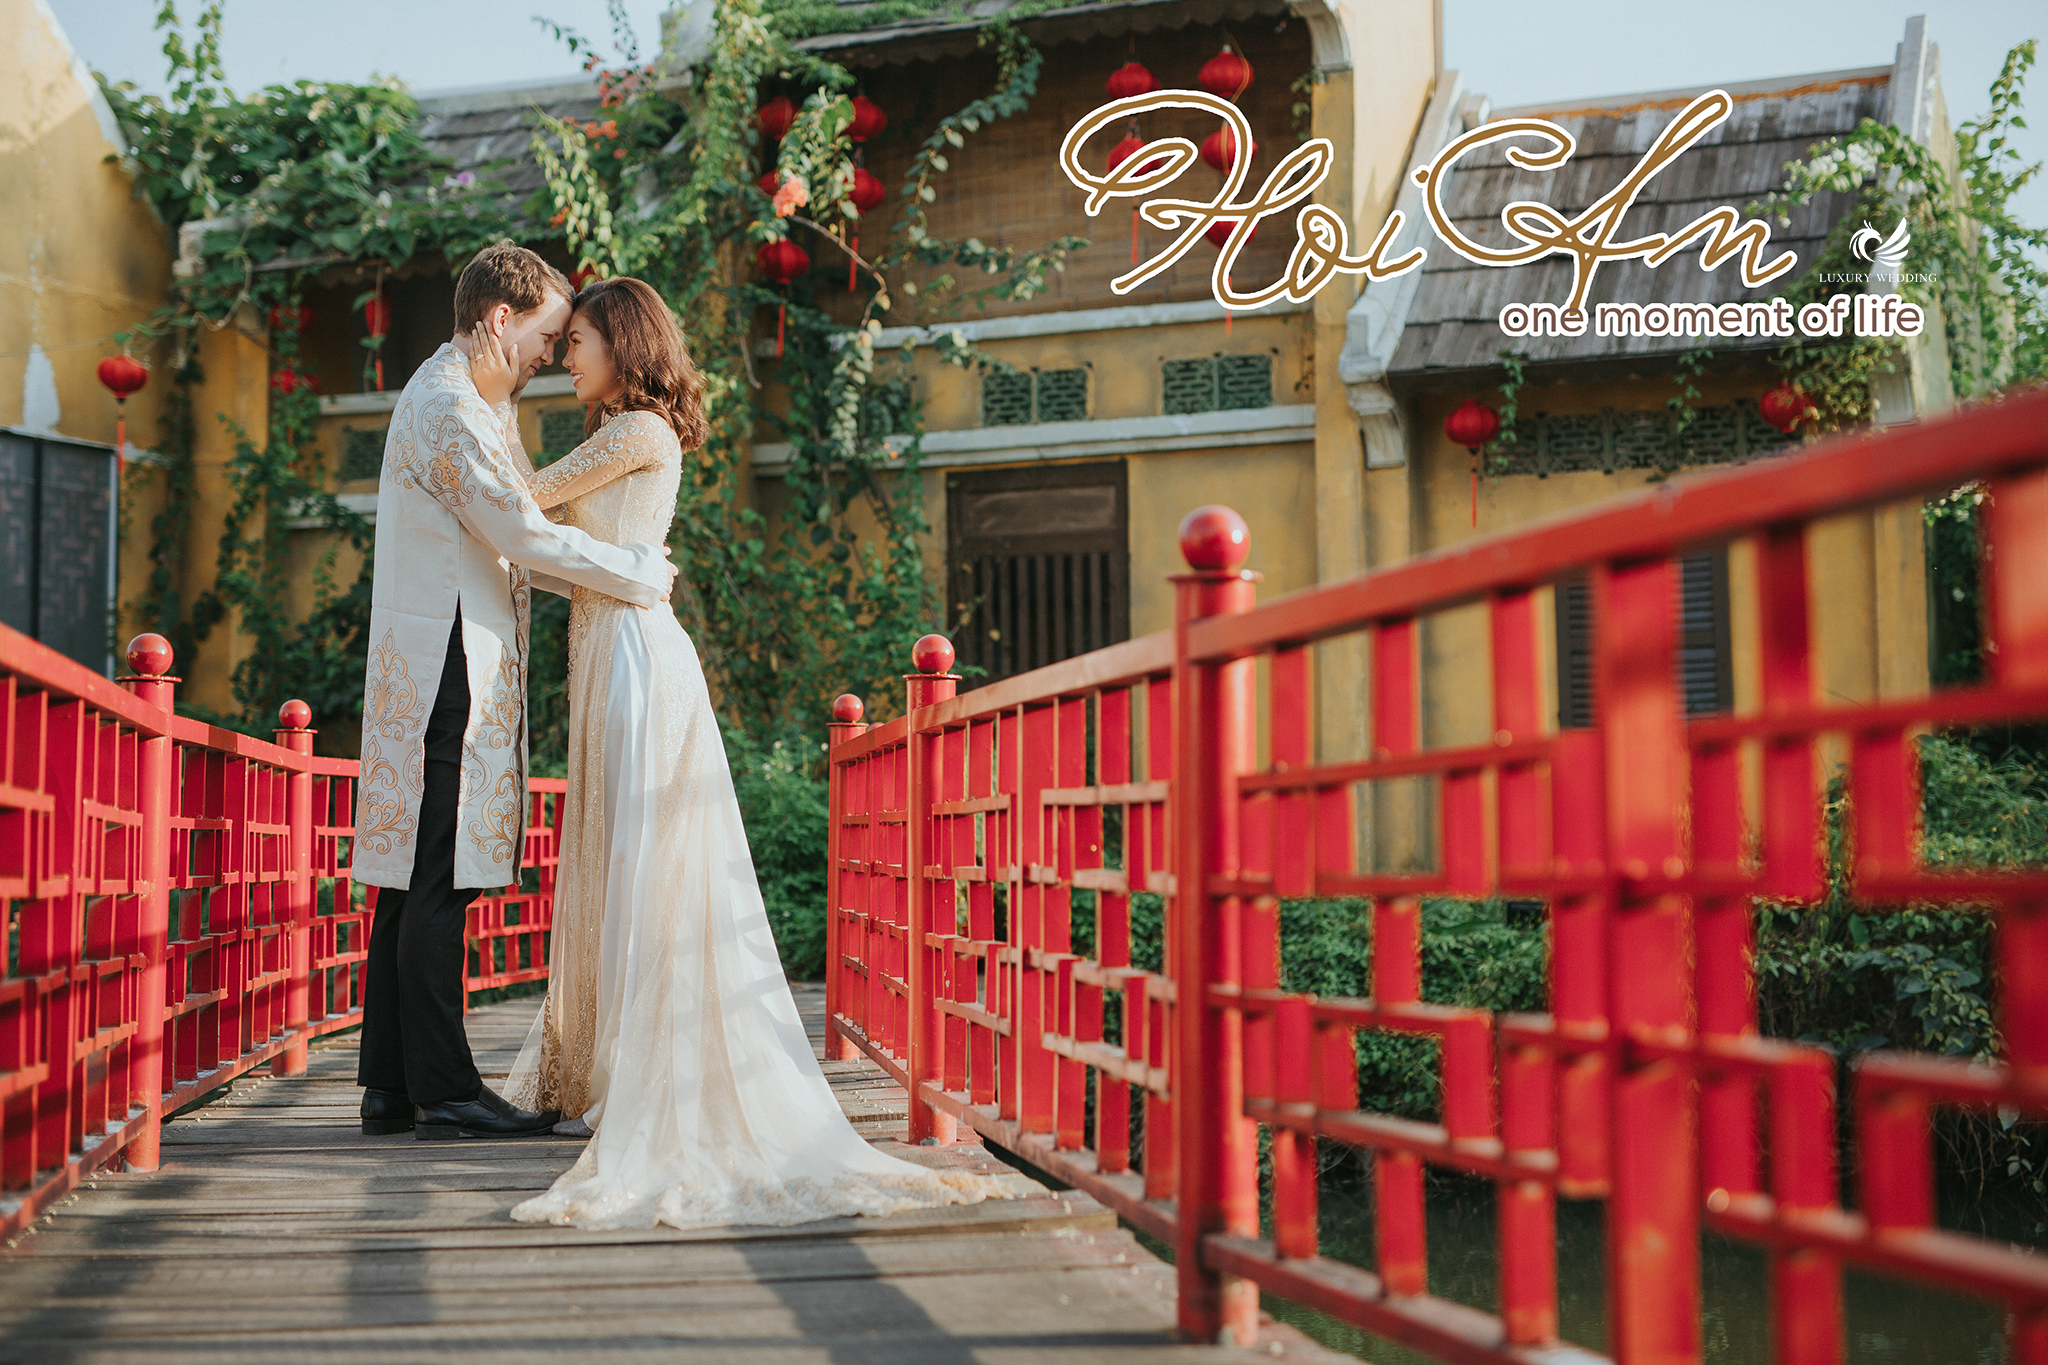 Sài Gòn là một trong những nơi đẹp nhất để chụp ảnh cưới lãng mạn, đặc biệt là khi L\'amour phim trường đứng ra đảm nhận việc chụp ảnh. Tại đây, các cặp đôi sẽ có những khoảnh khắc tuyệt vời nhất, để lưu giữ kỷ niệm tình yêu của mình.